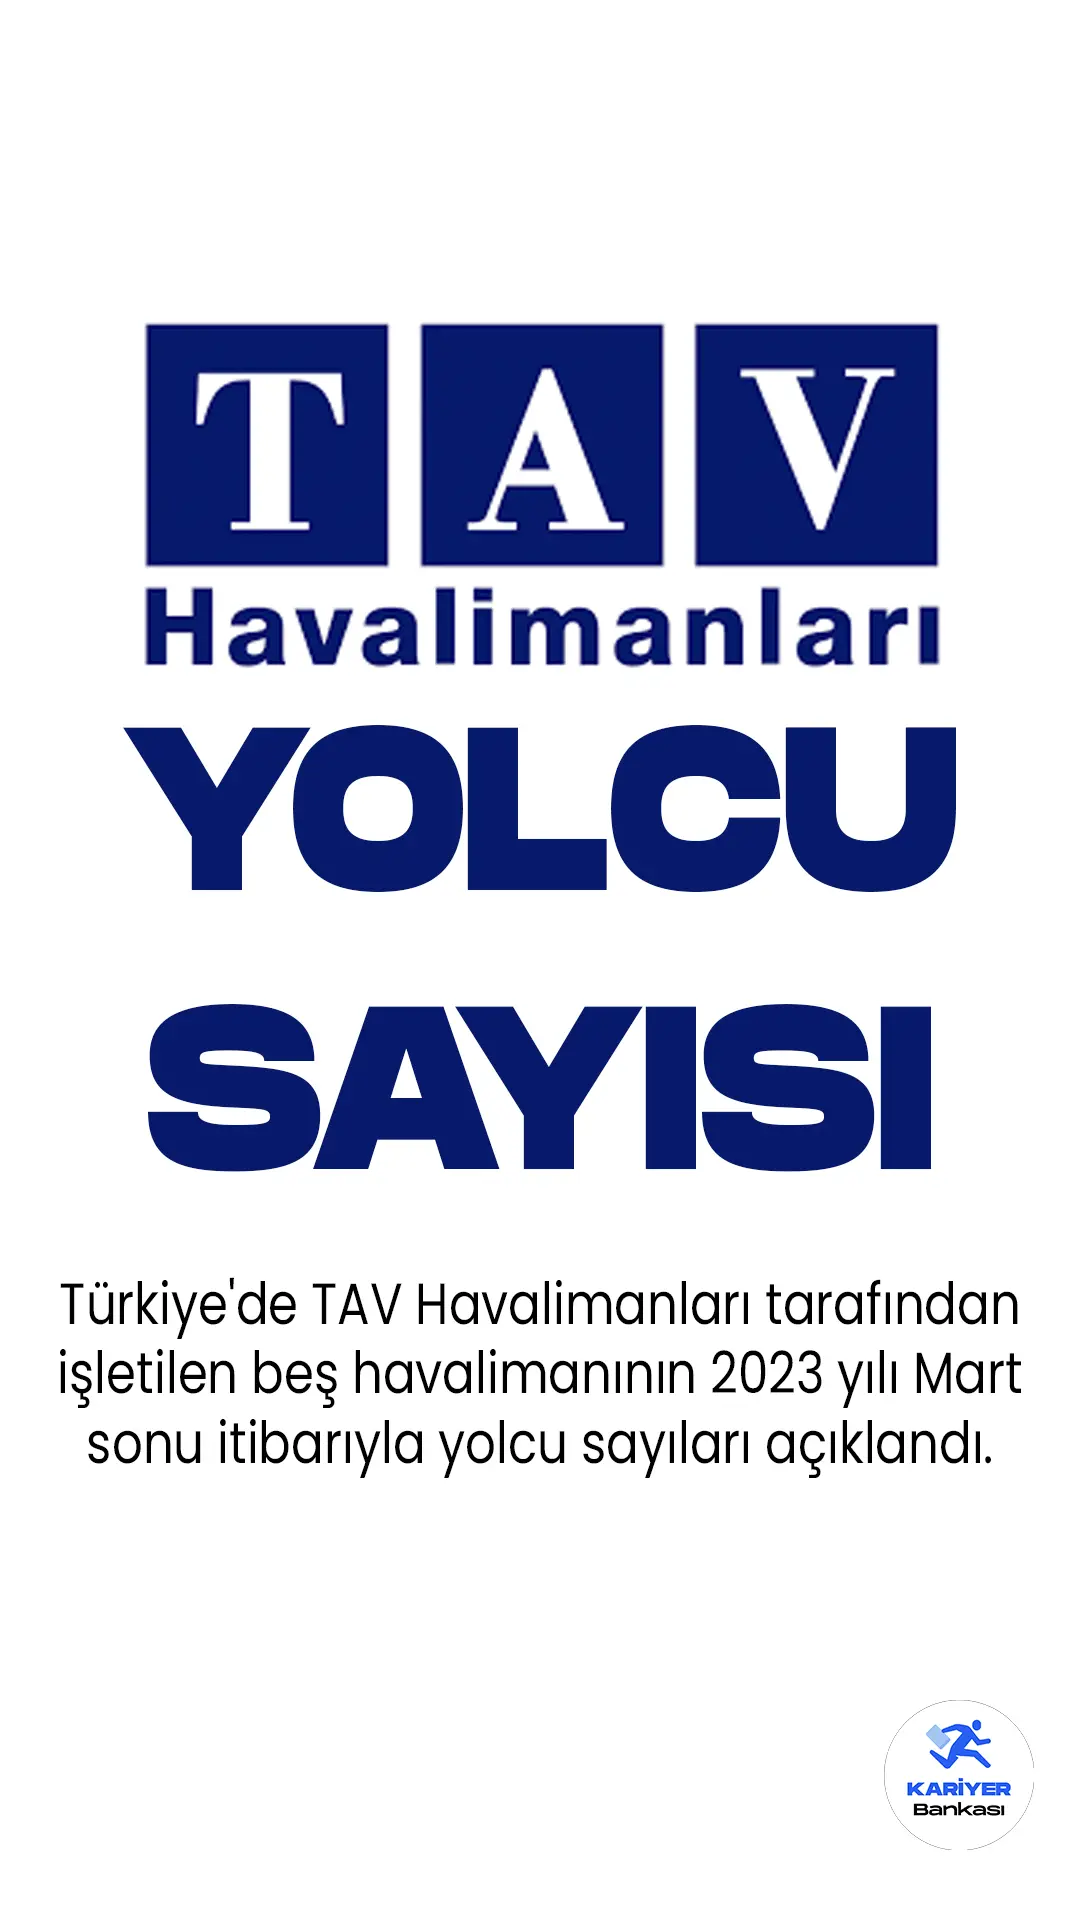 Türkiye'de TAV Havalimanları tarafından işletilen beş havalimanının 2023 yılı Mart sonu itibarıyla yolcu sayıları açıklandı.